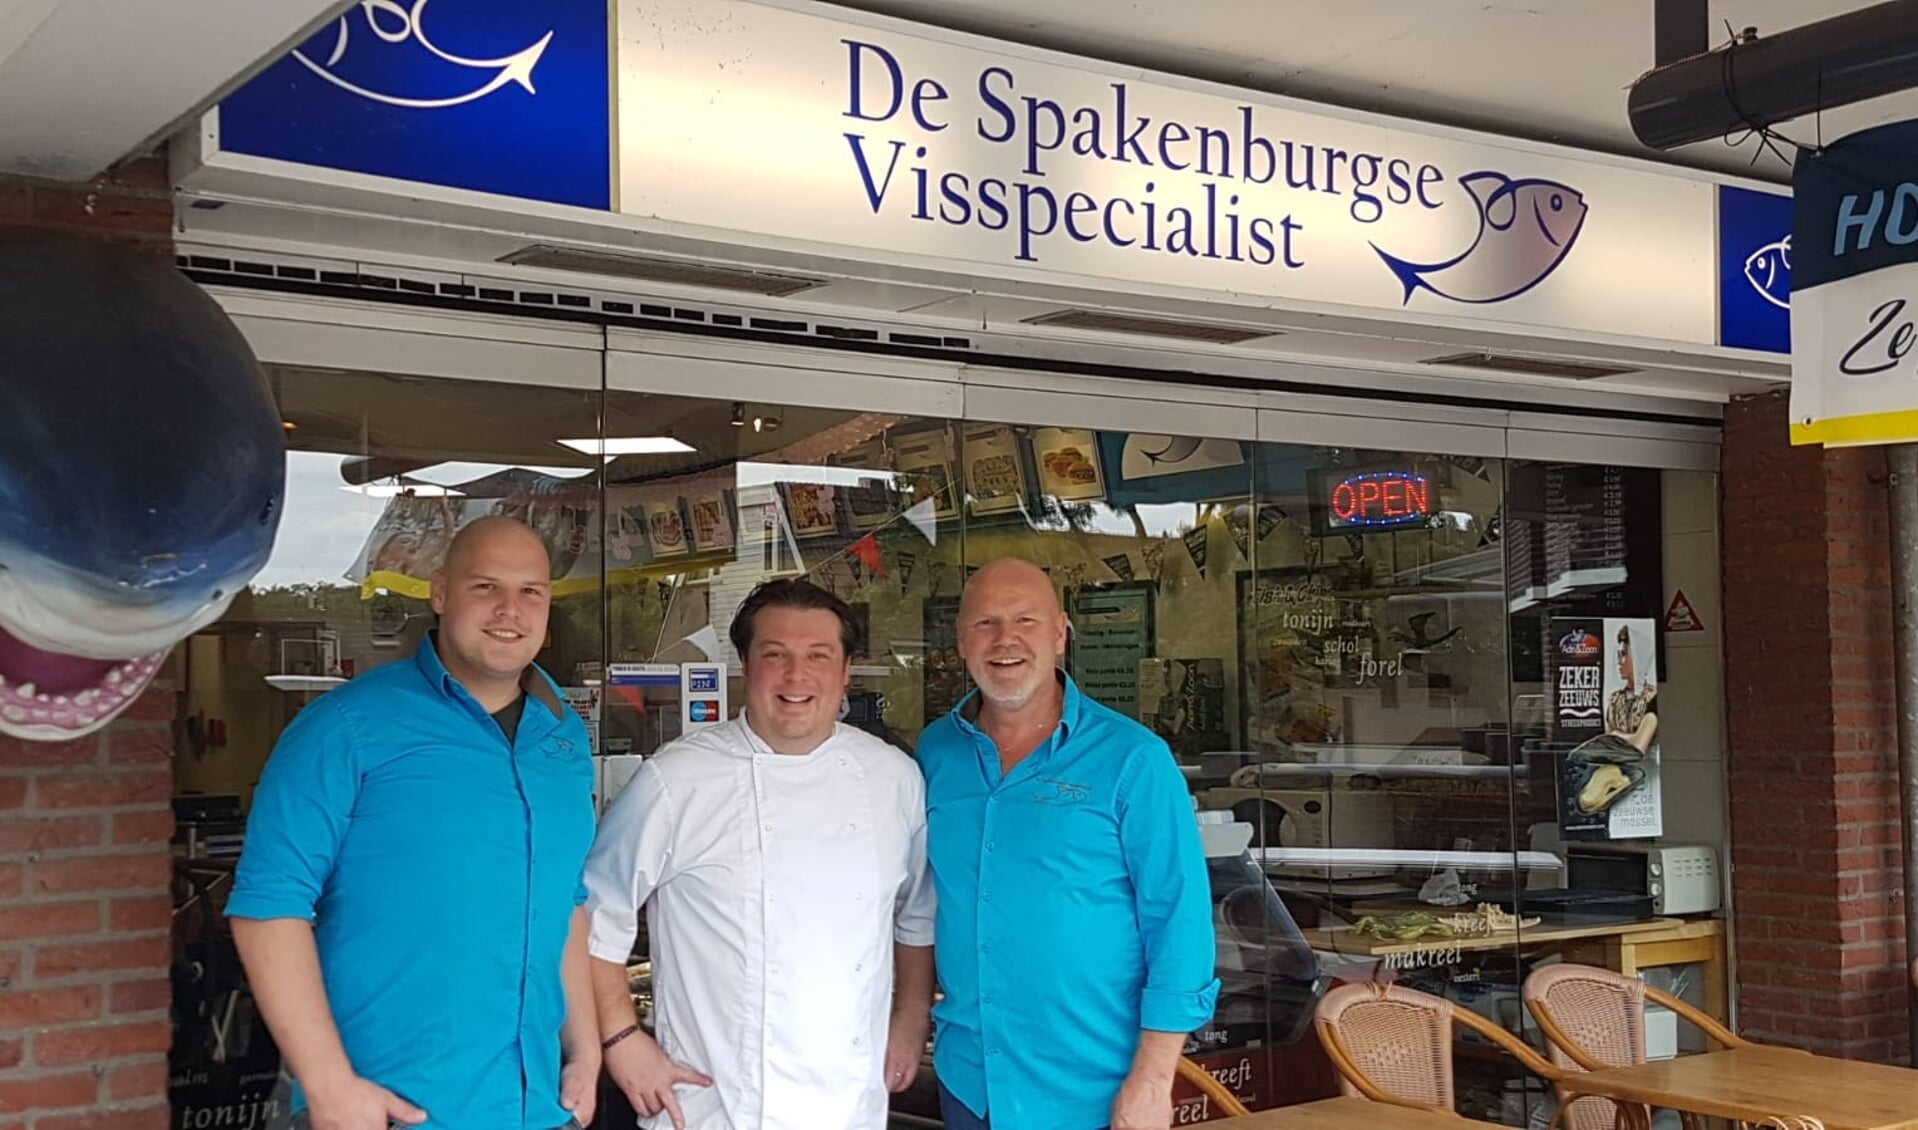 V.l.n.r. Bart Bos, Frederick van Emstede en Bertus Bos voor de deur van De Spakenburgse Visspecialist.  